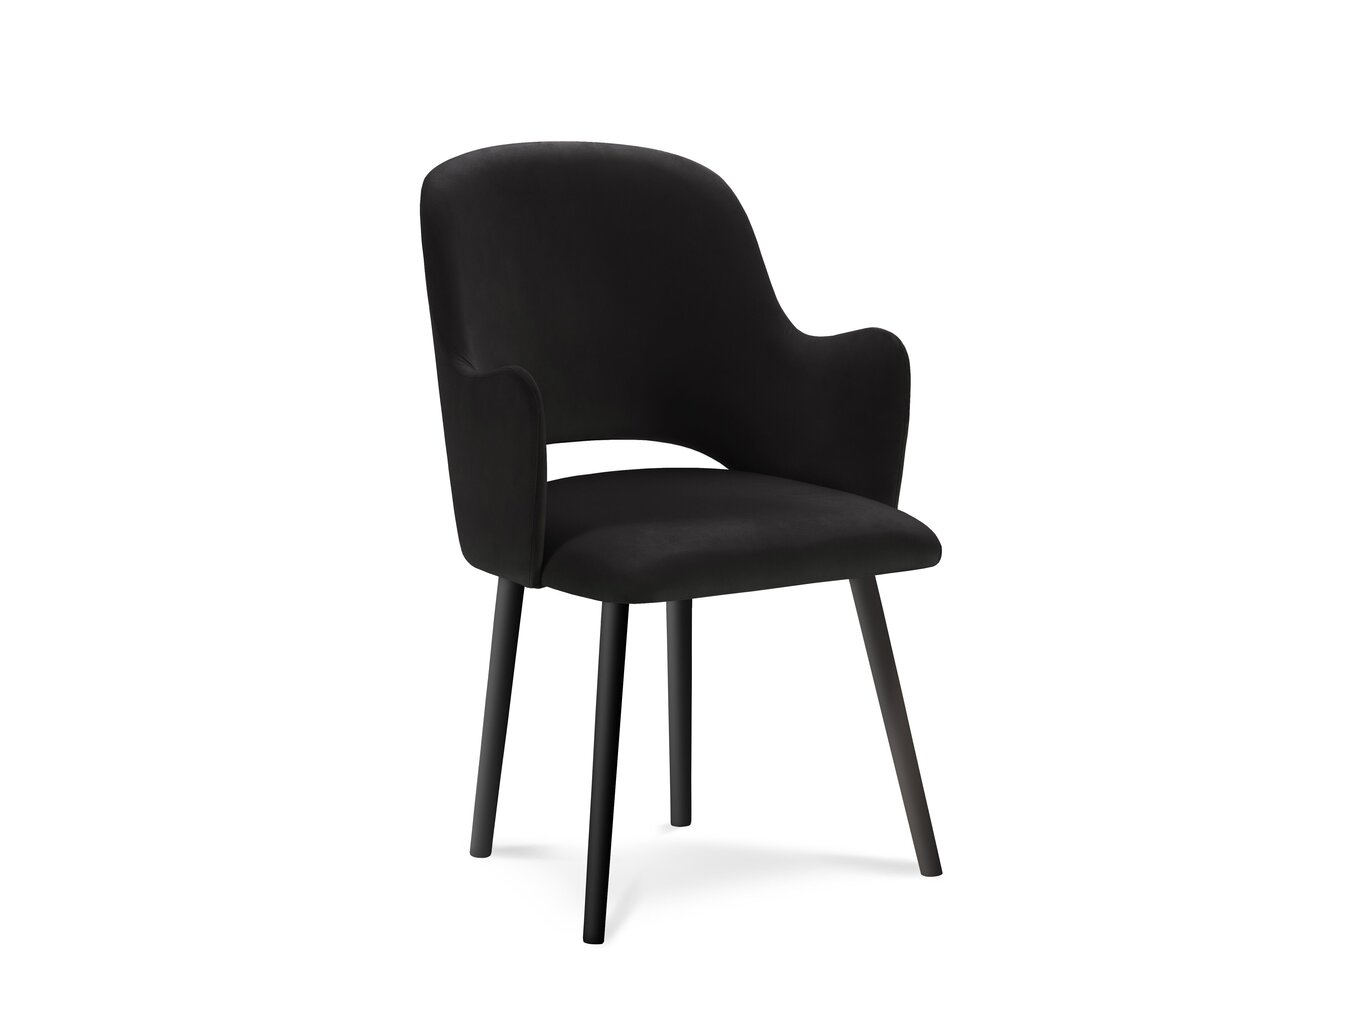 4-ių kėdžių komplektas Milo Casa Laelia, juodas цена и информация | Virtuvės ir valgomojo kėdės | pigu.lt